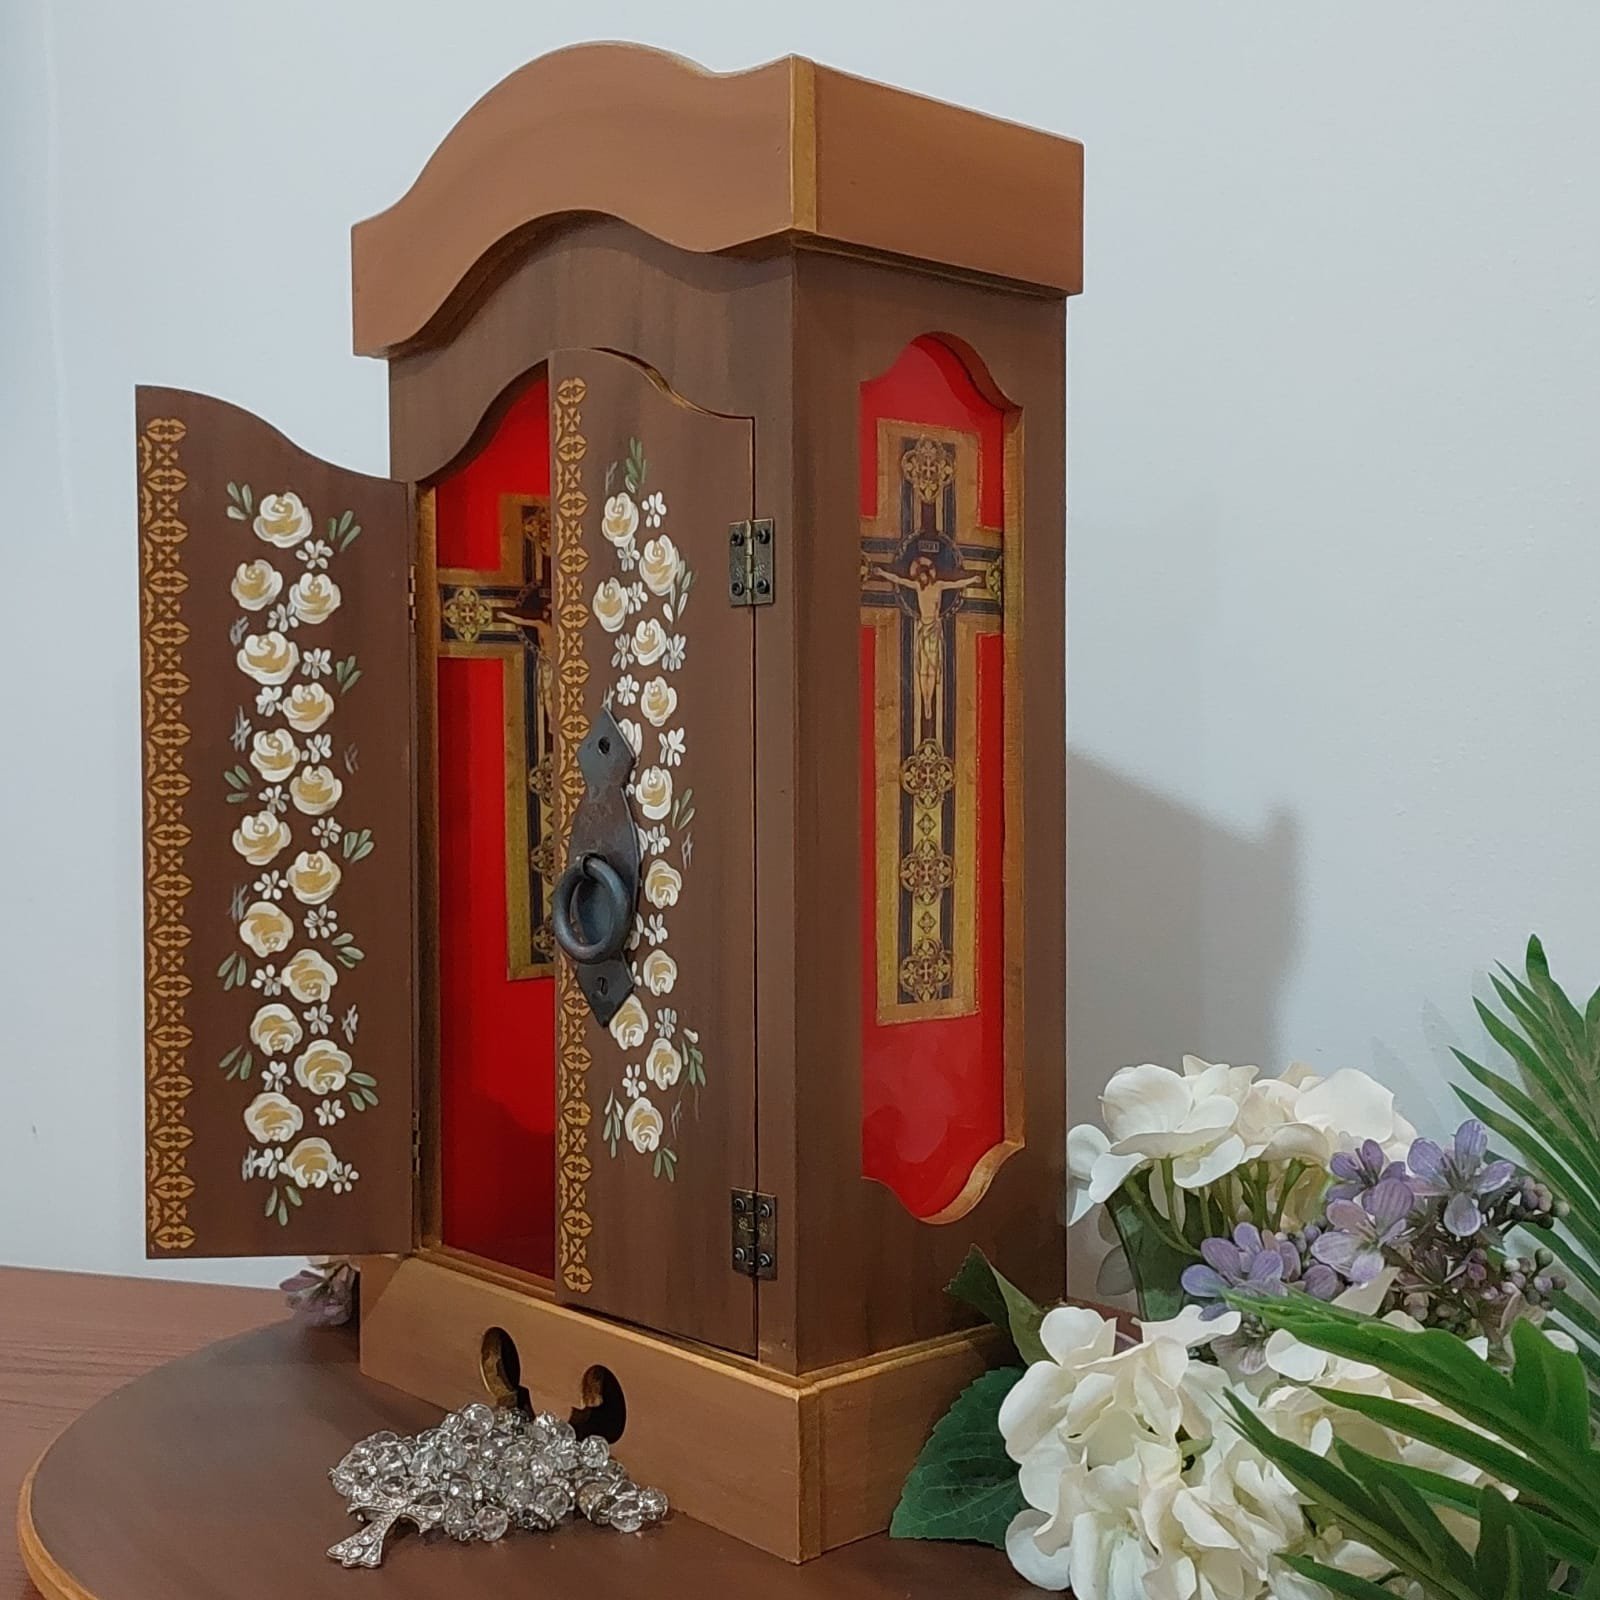 Trio Peças De Xadrez Rei, Torre E Peão Decoração Em Cerâmica Vinho